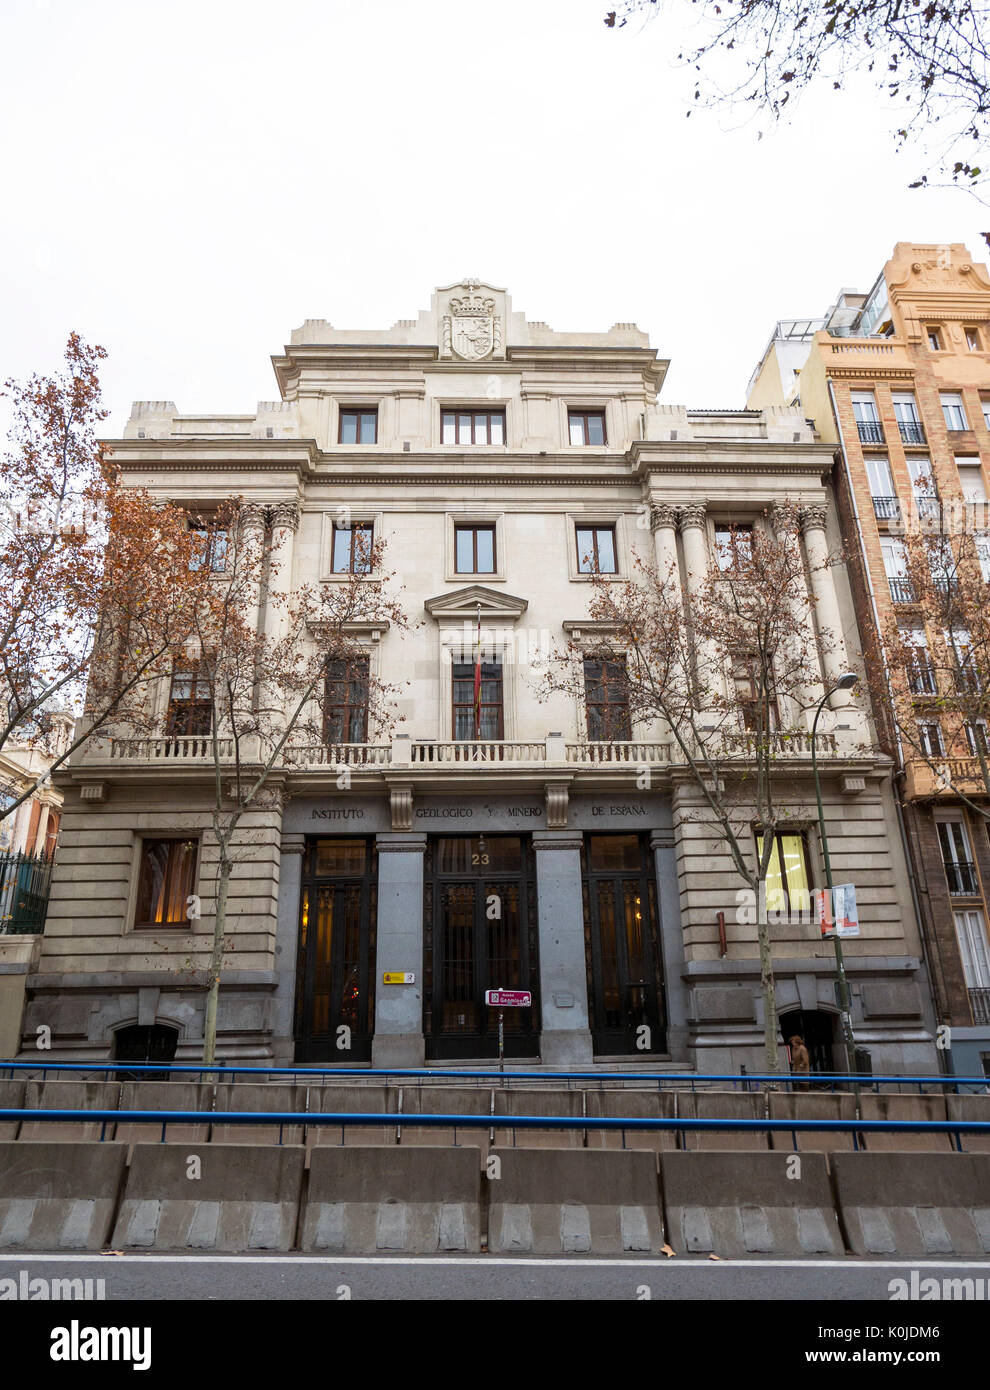 Instituto y museo geológico y minero. Madrid capital. España Stock Photo